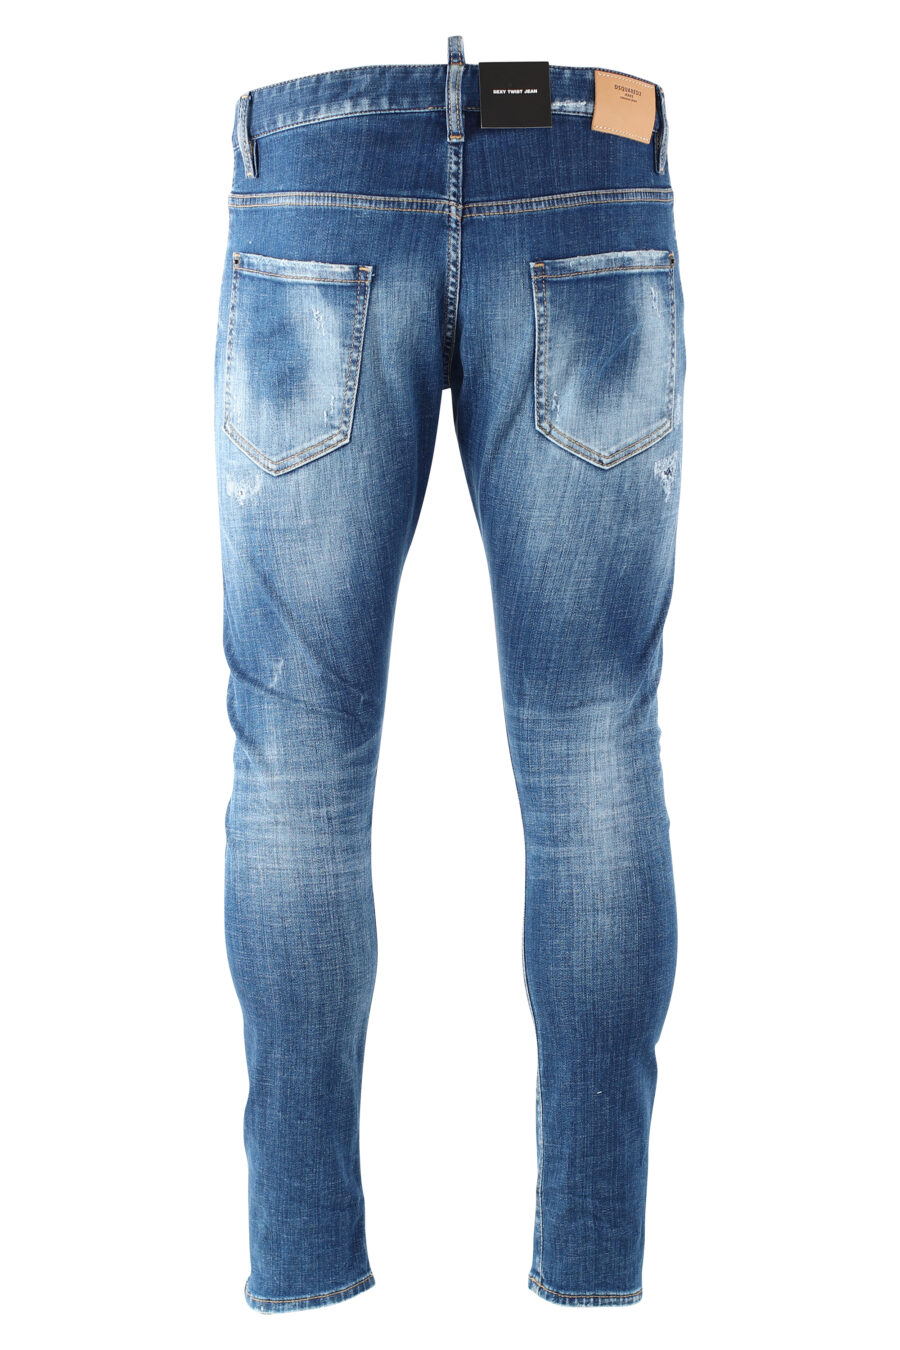 Jeans sexy twist denim "sexy twiste jean" bleu porté avec des déchirures - IMG 9697